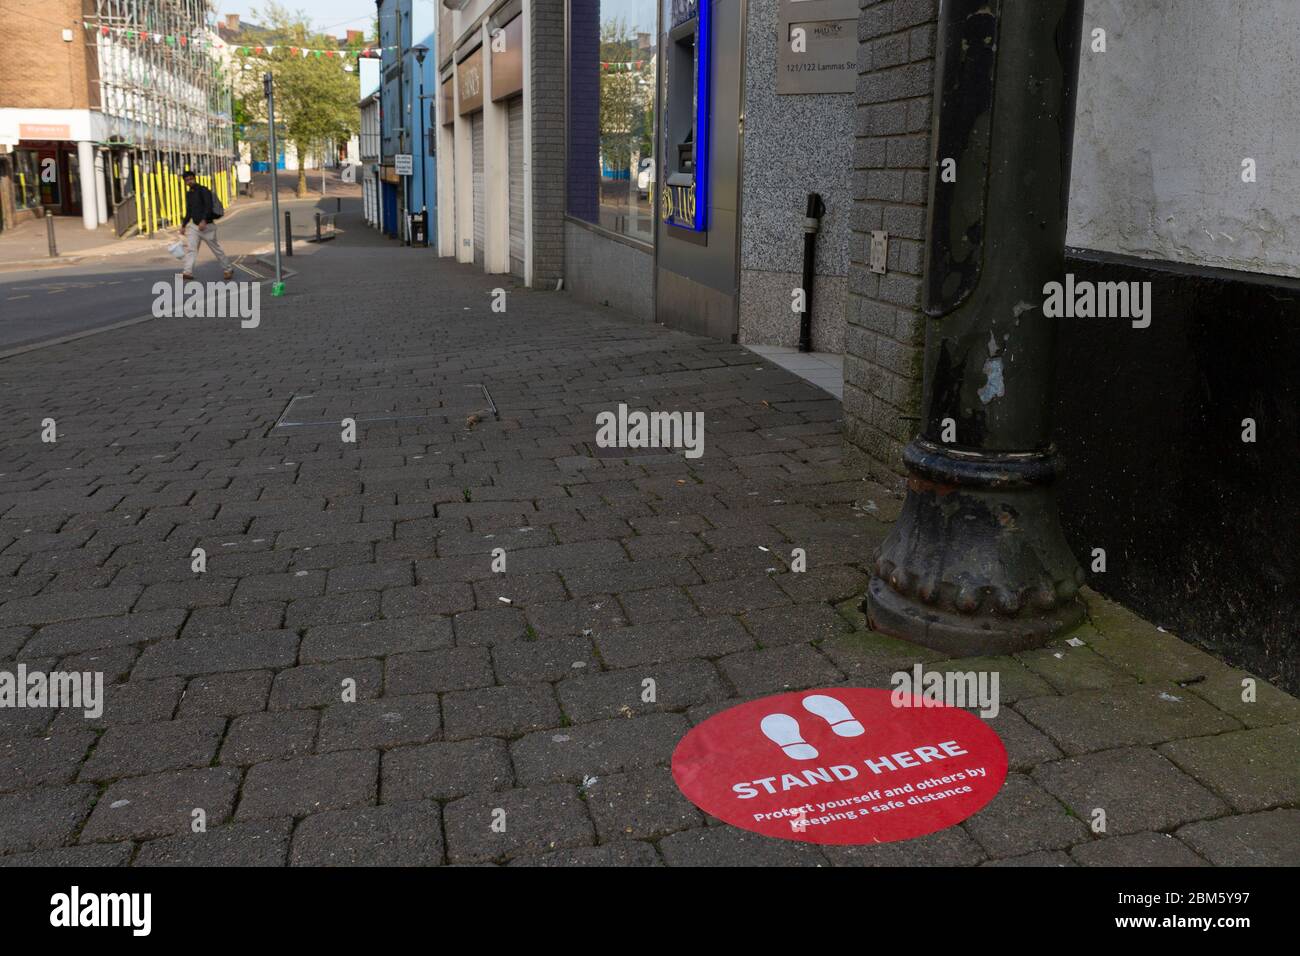 Ein Aufkleber auf dem Bürgersteig vor einer Baugesellschaft / Bank zeigt Kunden, wo sie stehen müssen, um die sozialen Distanzierungsregeln einzuhalten Stockfoto